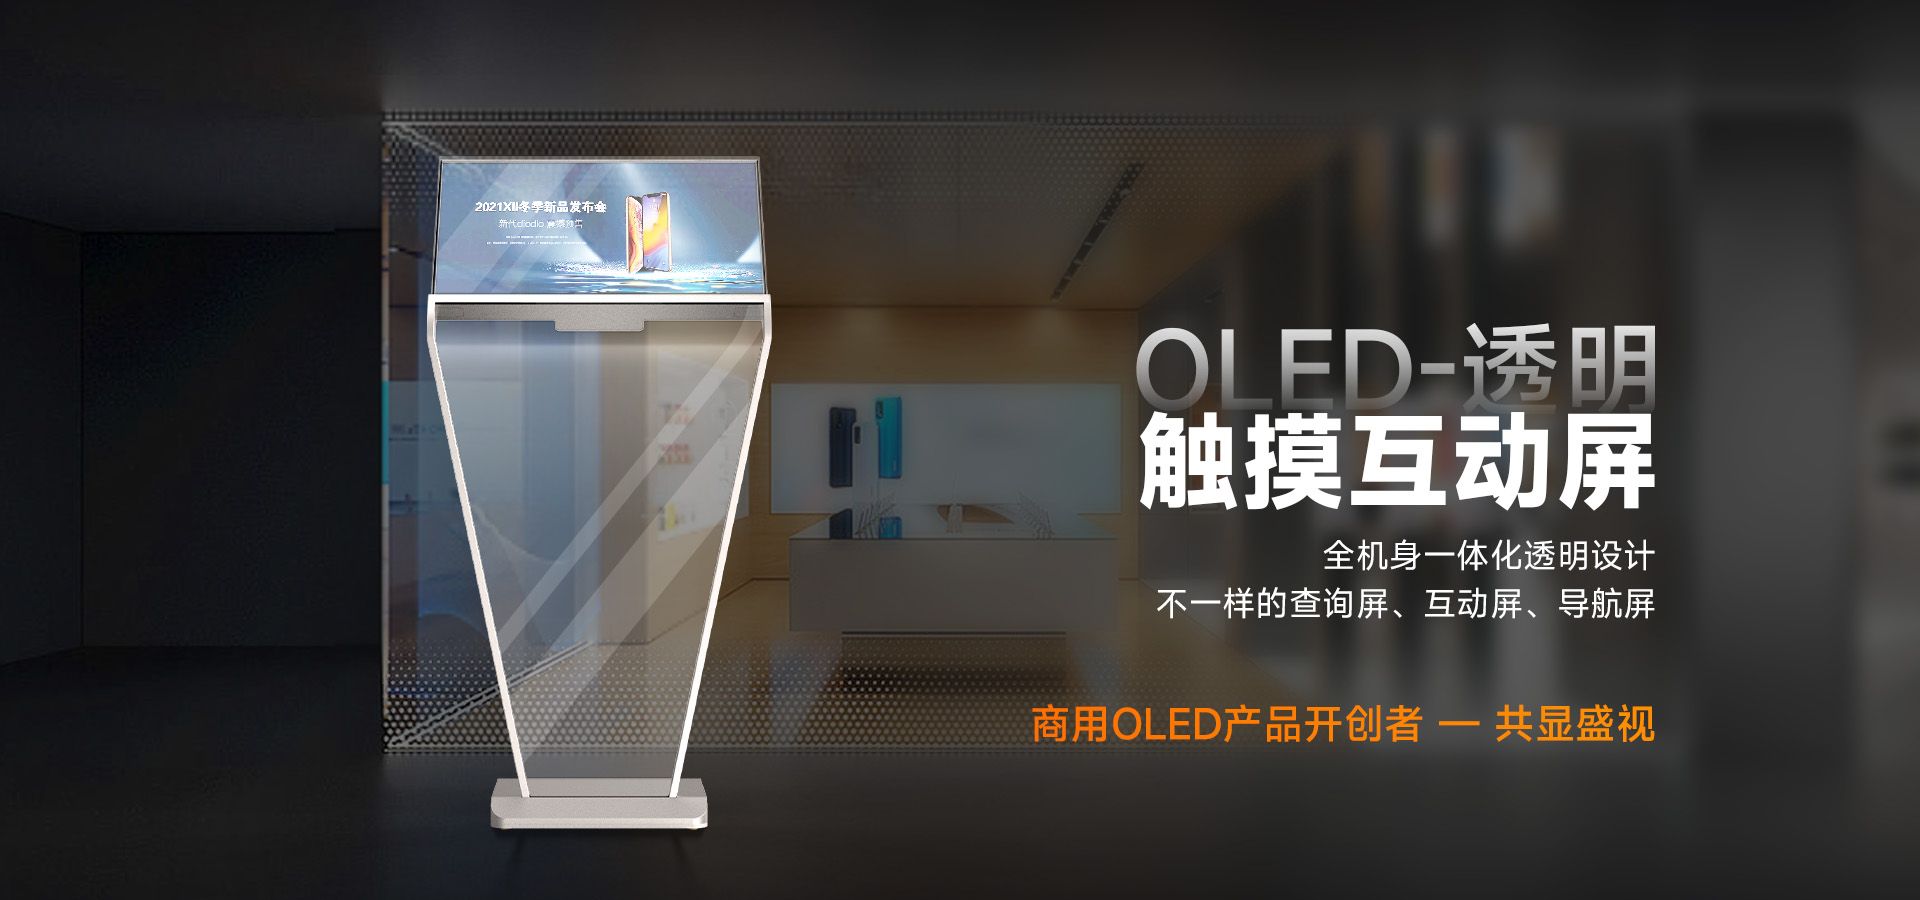 OLED透明触摸互动屏